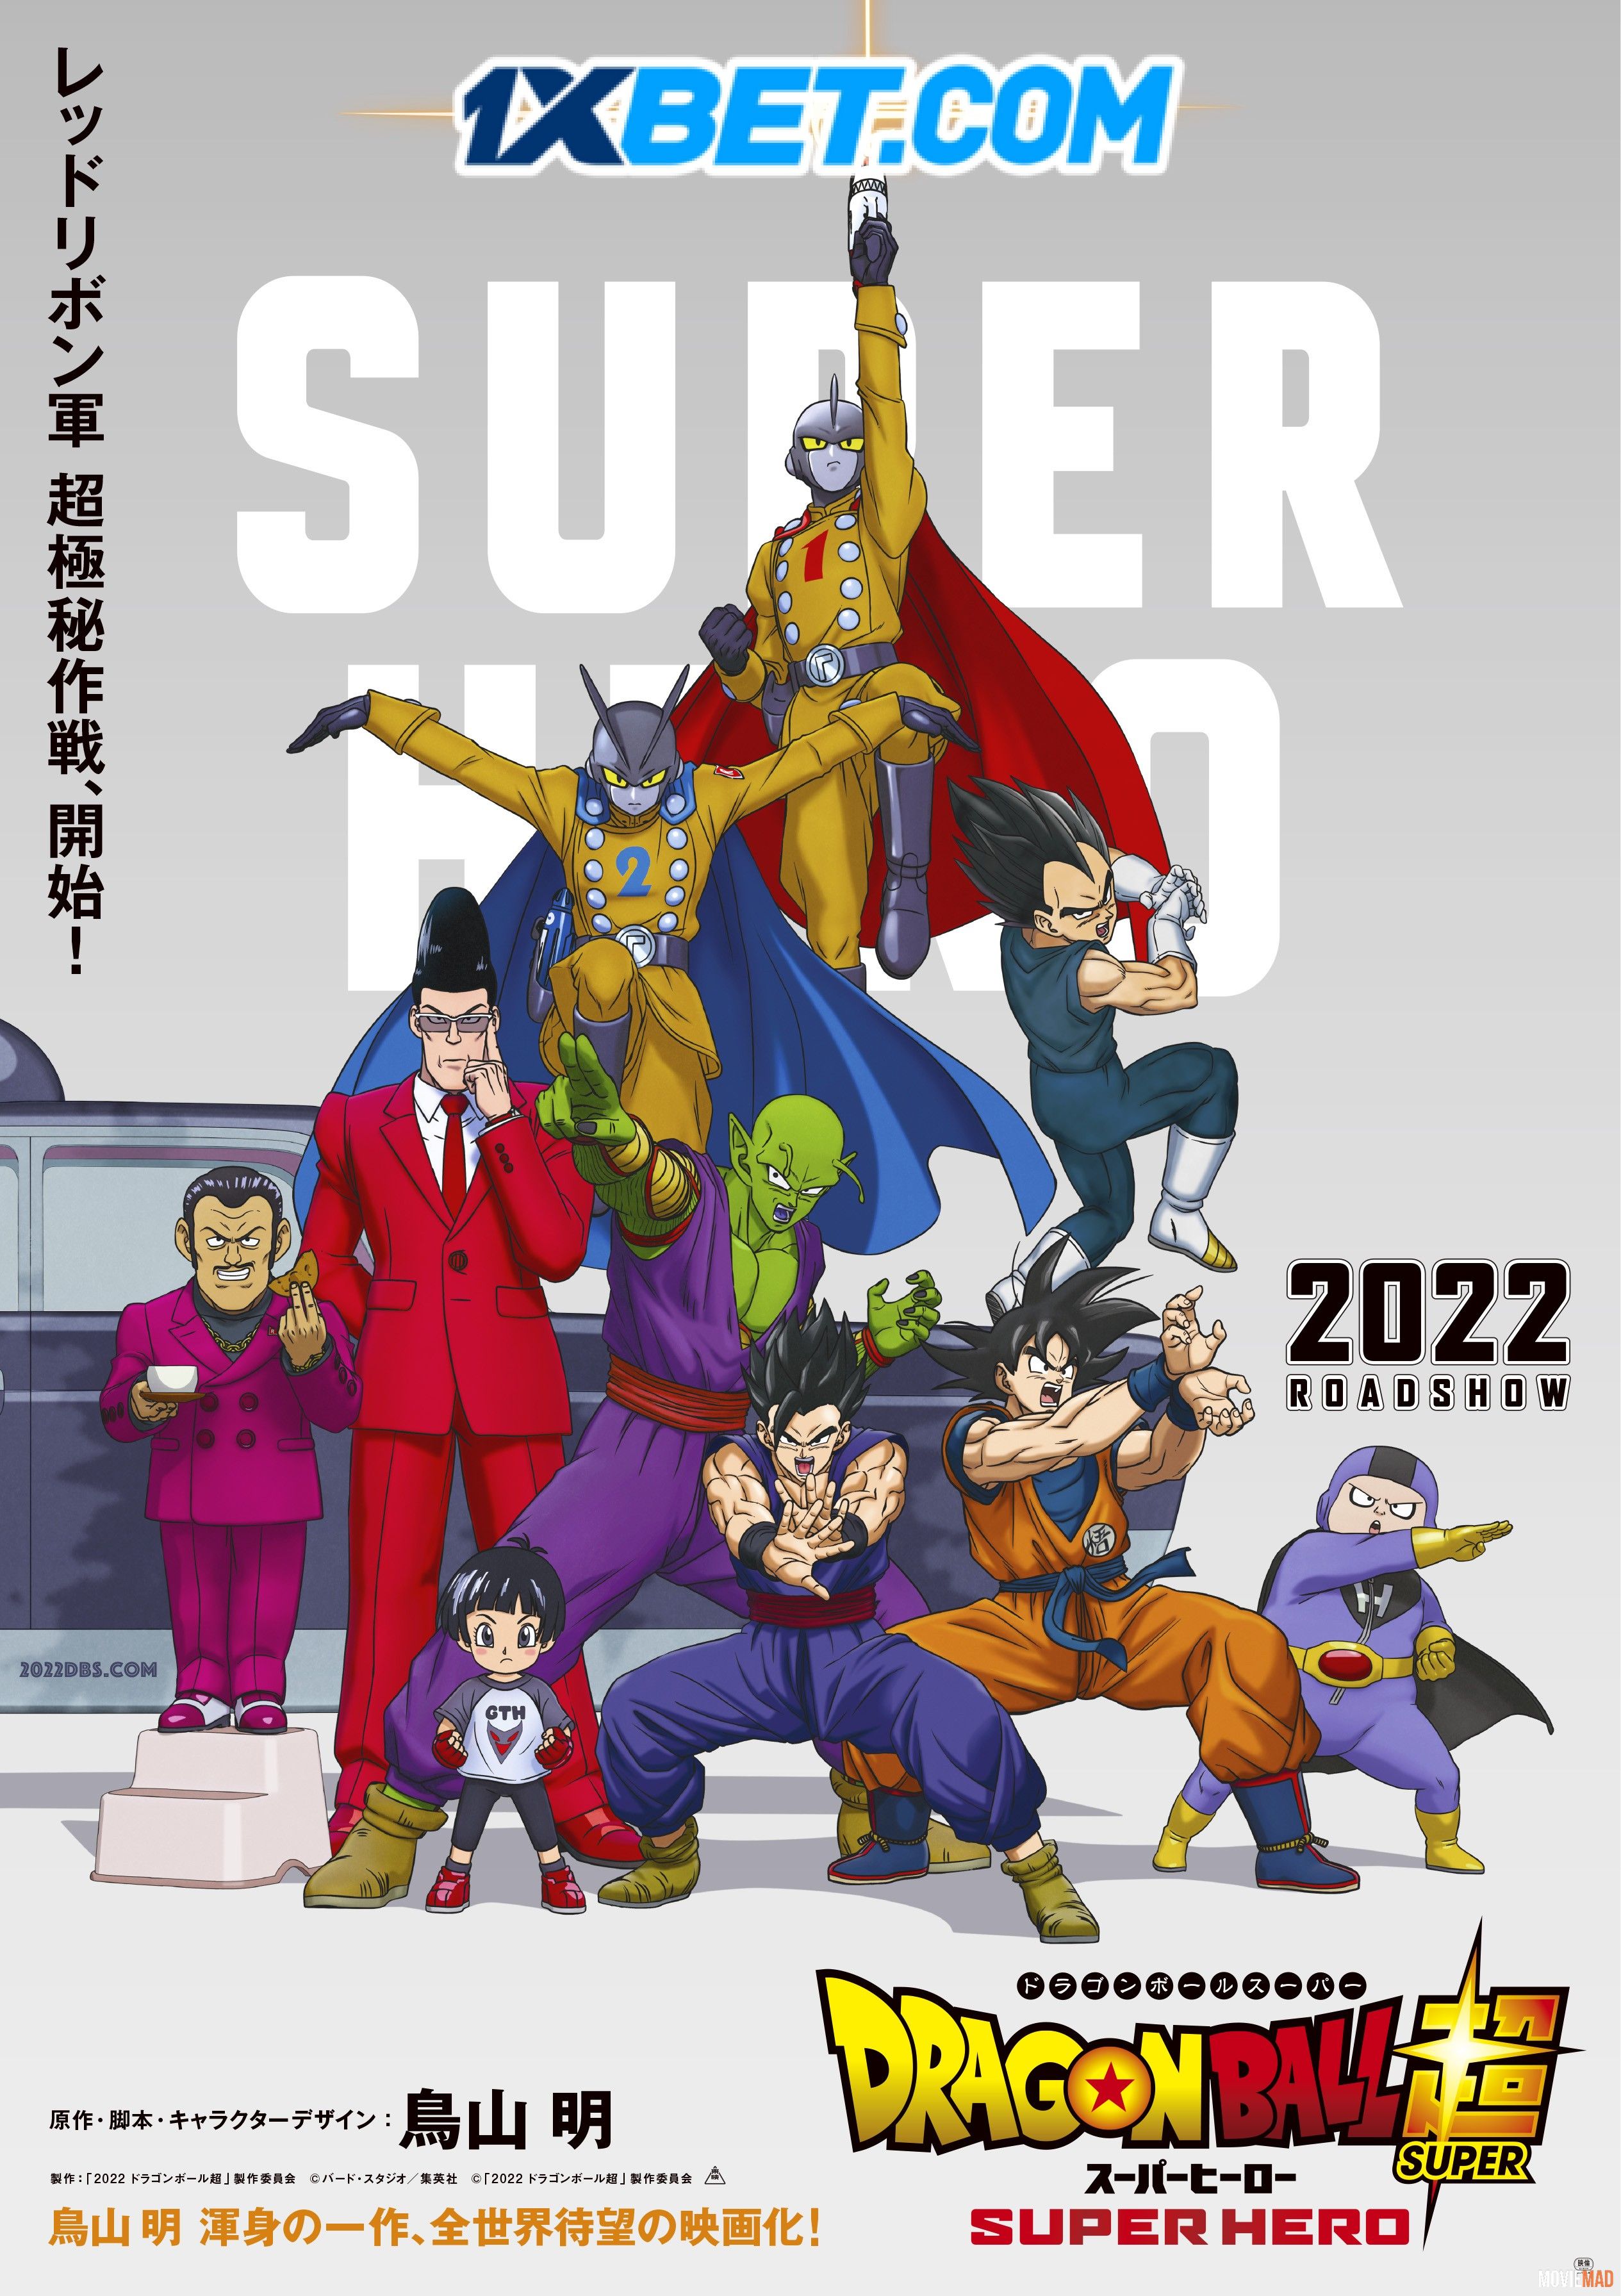 full moviesDragon Ball Super Super Hero (2022) Hindi Dubbed CAMRip Full Movie 1080p 720p 480p